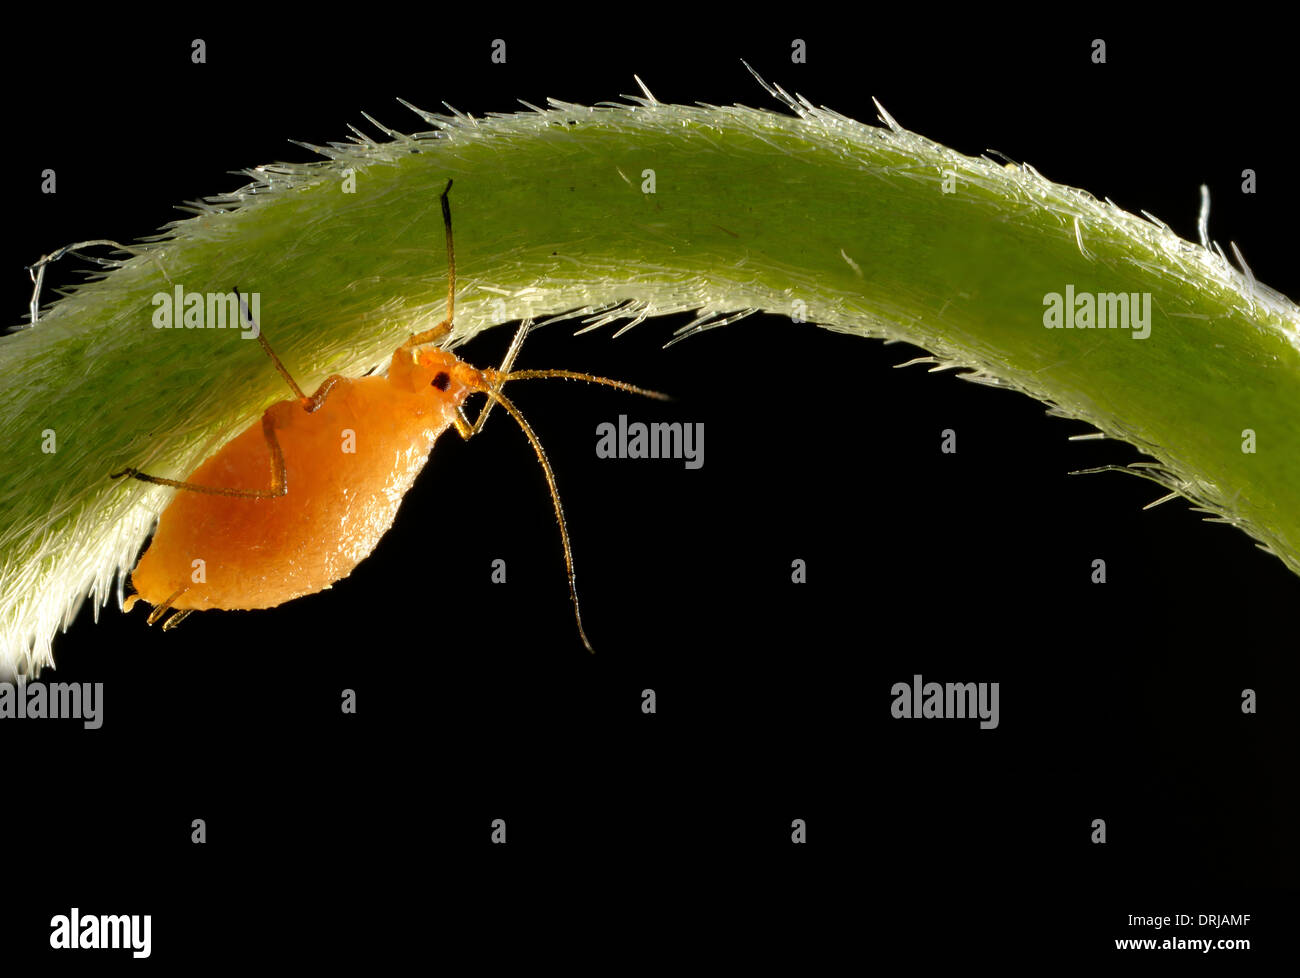 Afide del tubo (Aphidoidea) animale giovane sul peduncolo uno su una margherita (Bellis perennis) nella luce posteriore, extreme macroadmission, Röhr Foto Stock